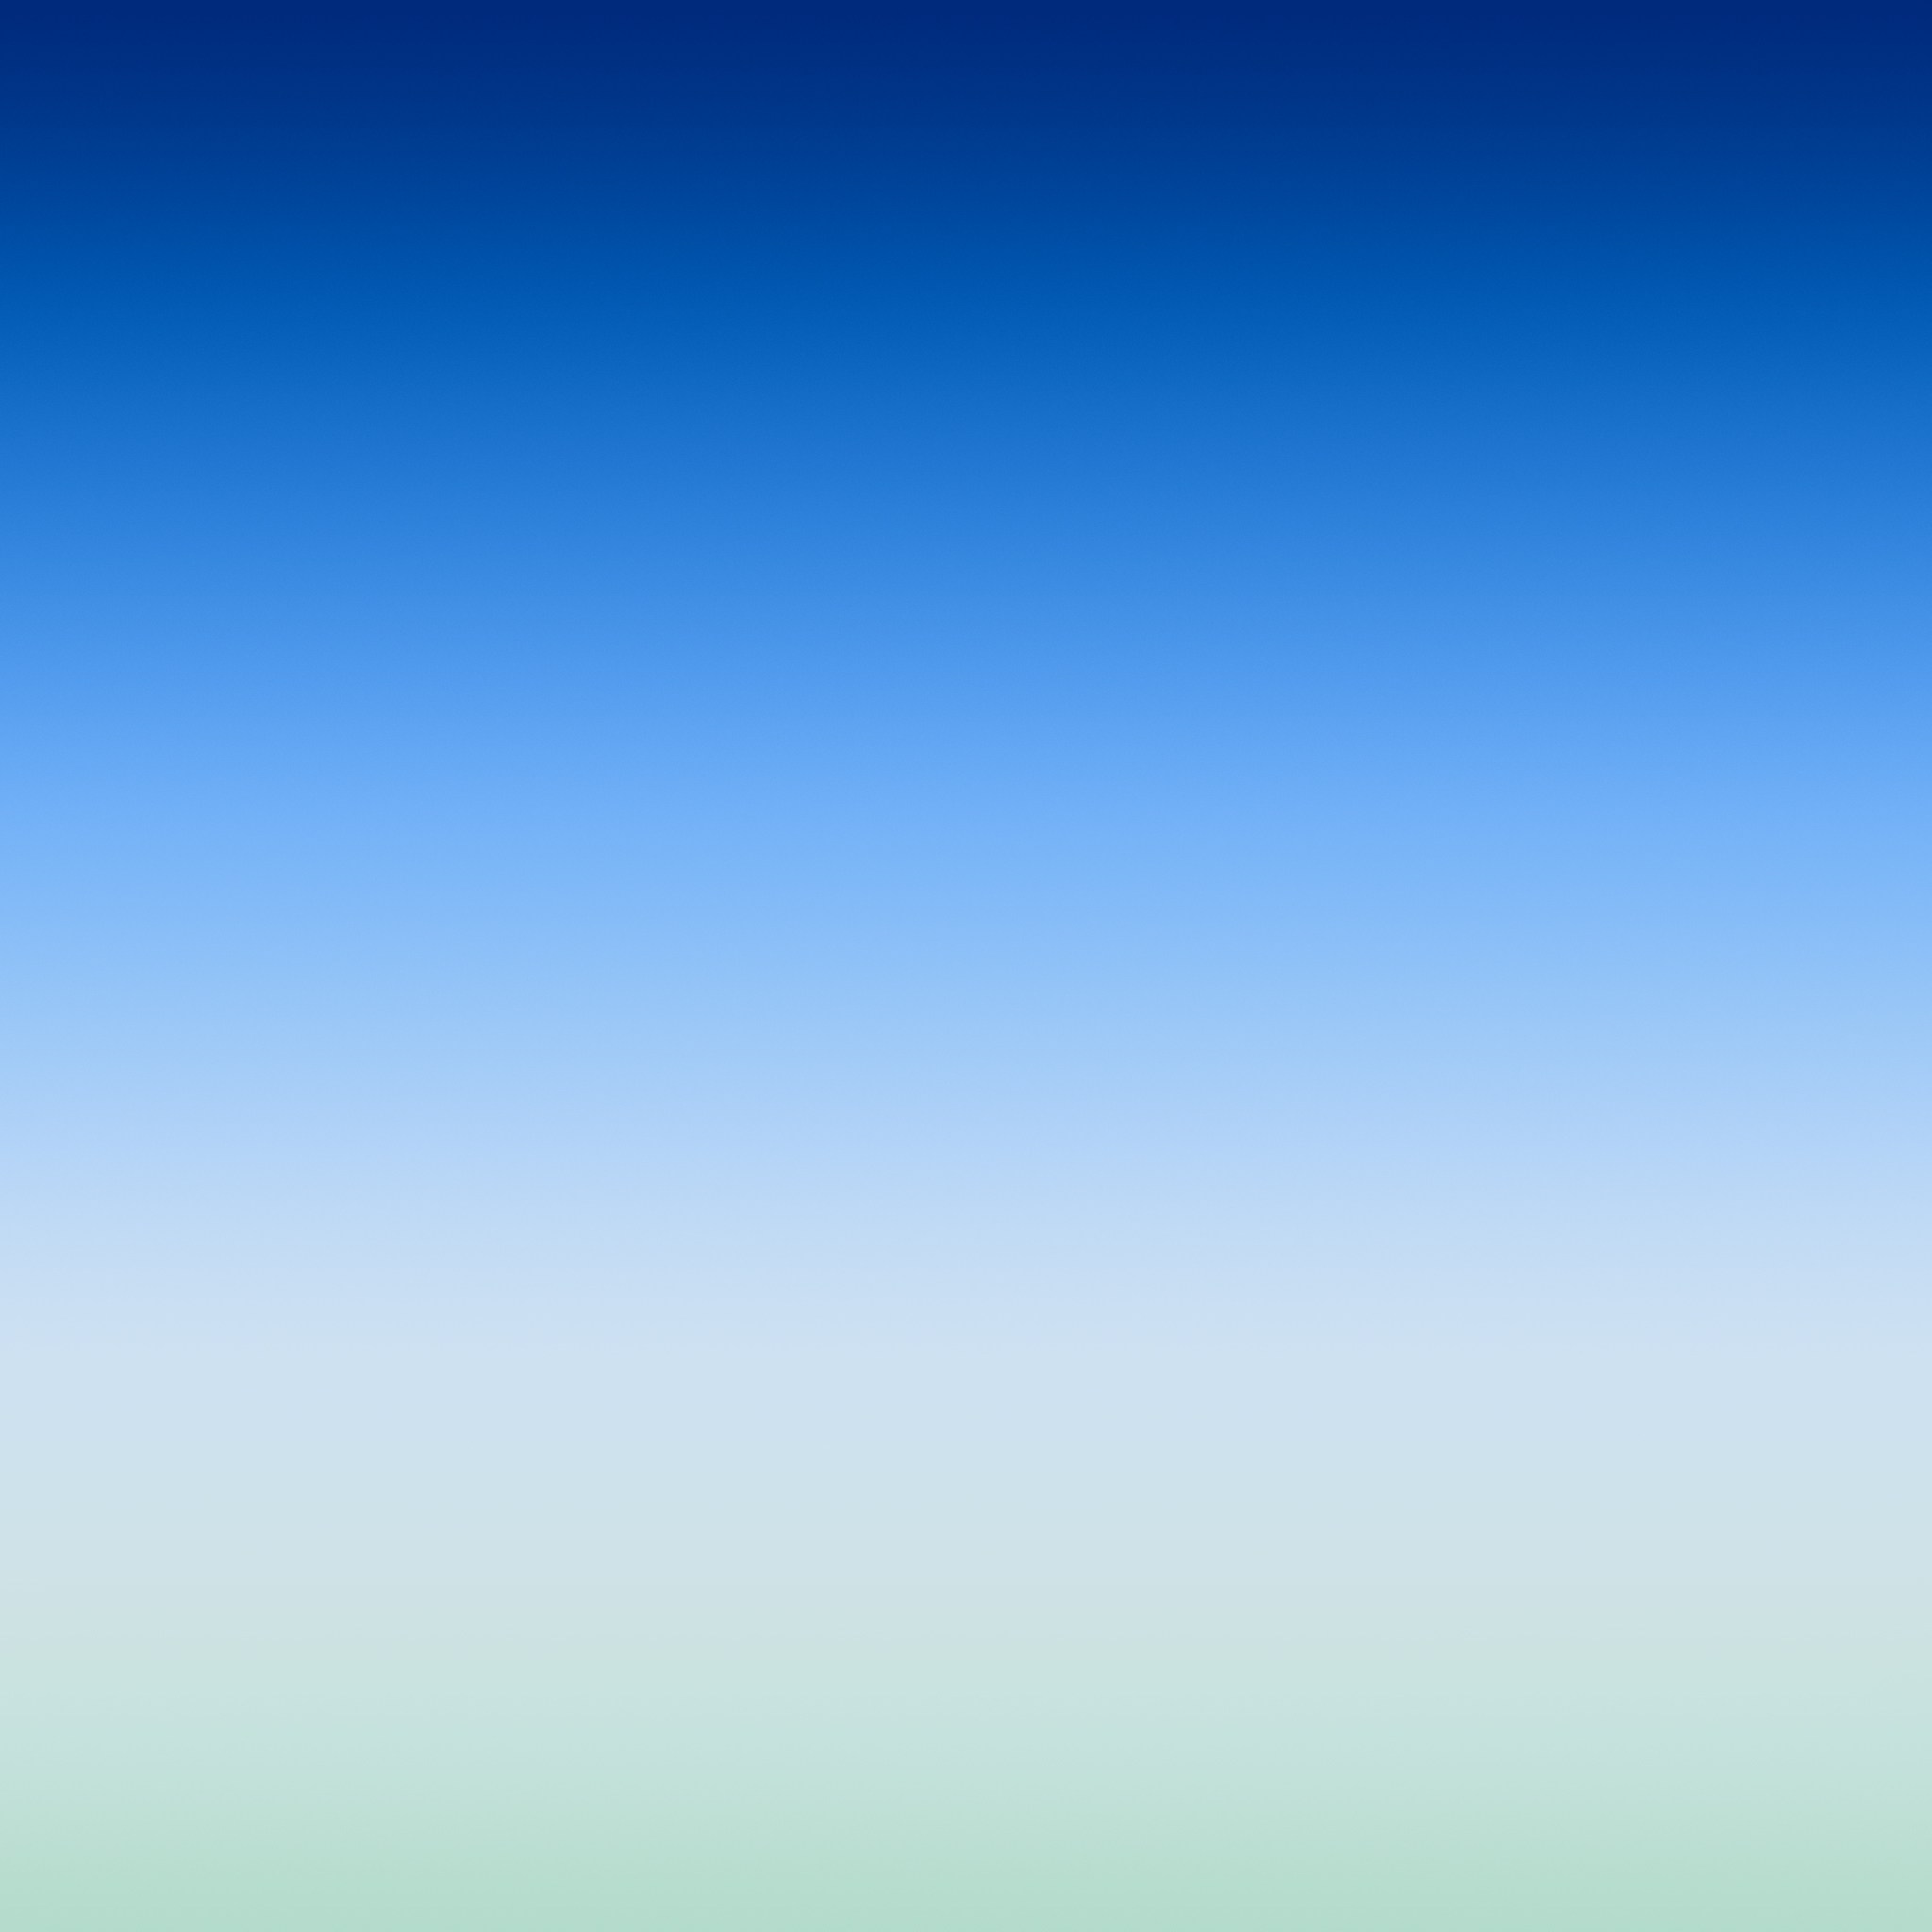 Iphone Wallpaper Blue Green - 2048x2048 Wallpaper 